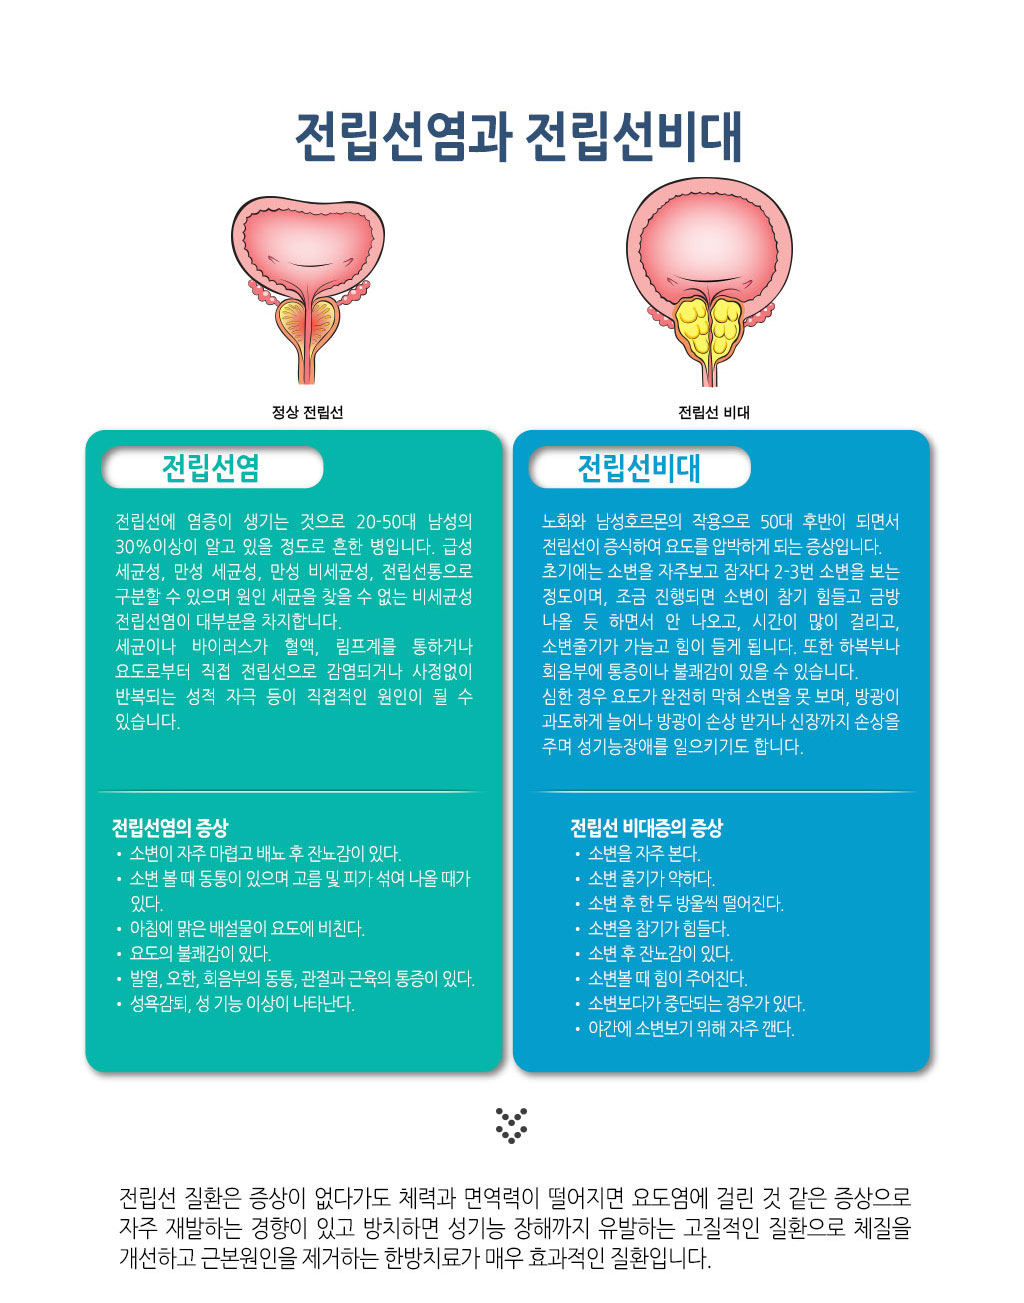 한국한의원, 한국한의원 전립선 클리닉, 전립선염 증상, 전립선비대 증상